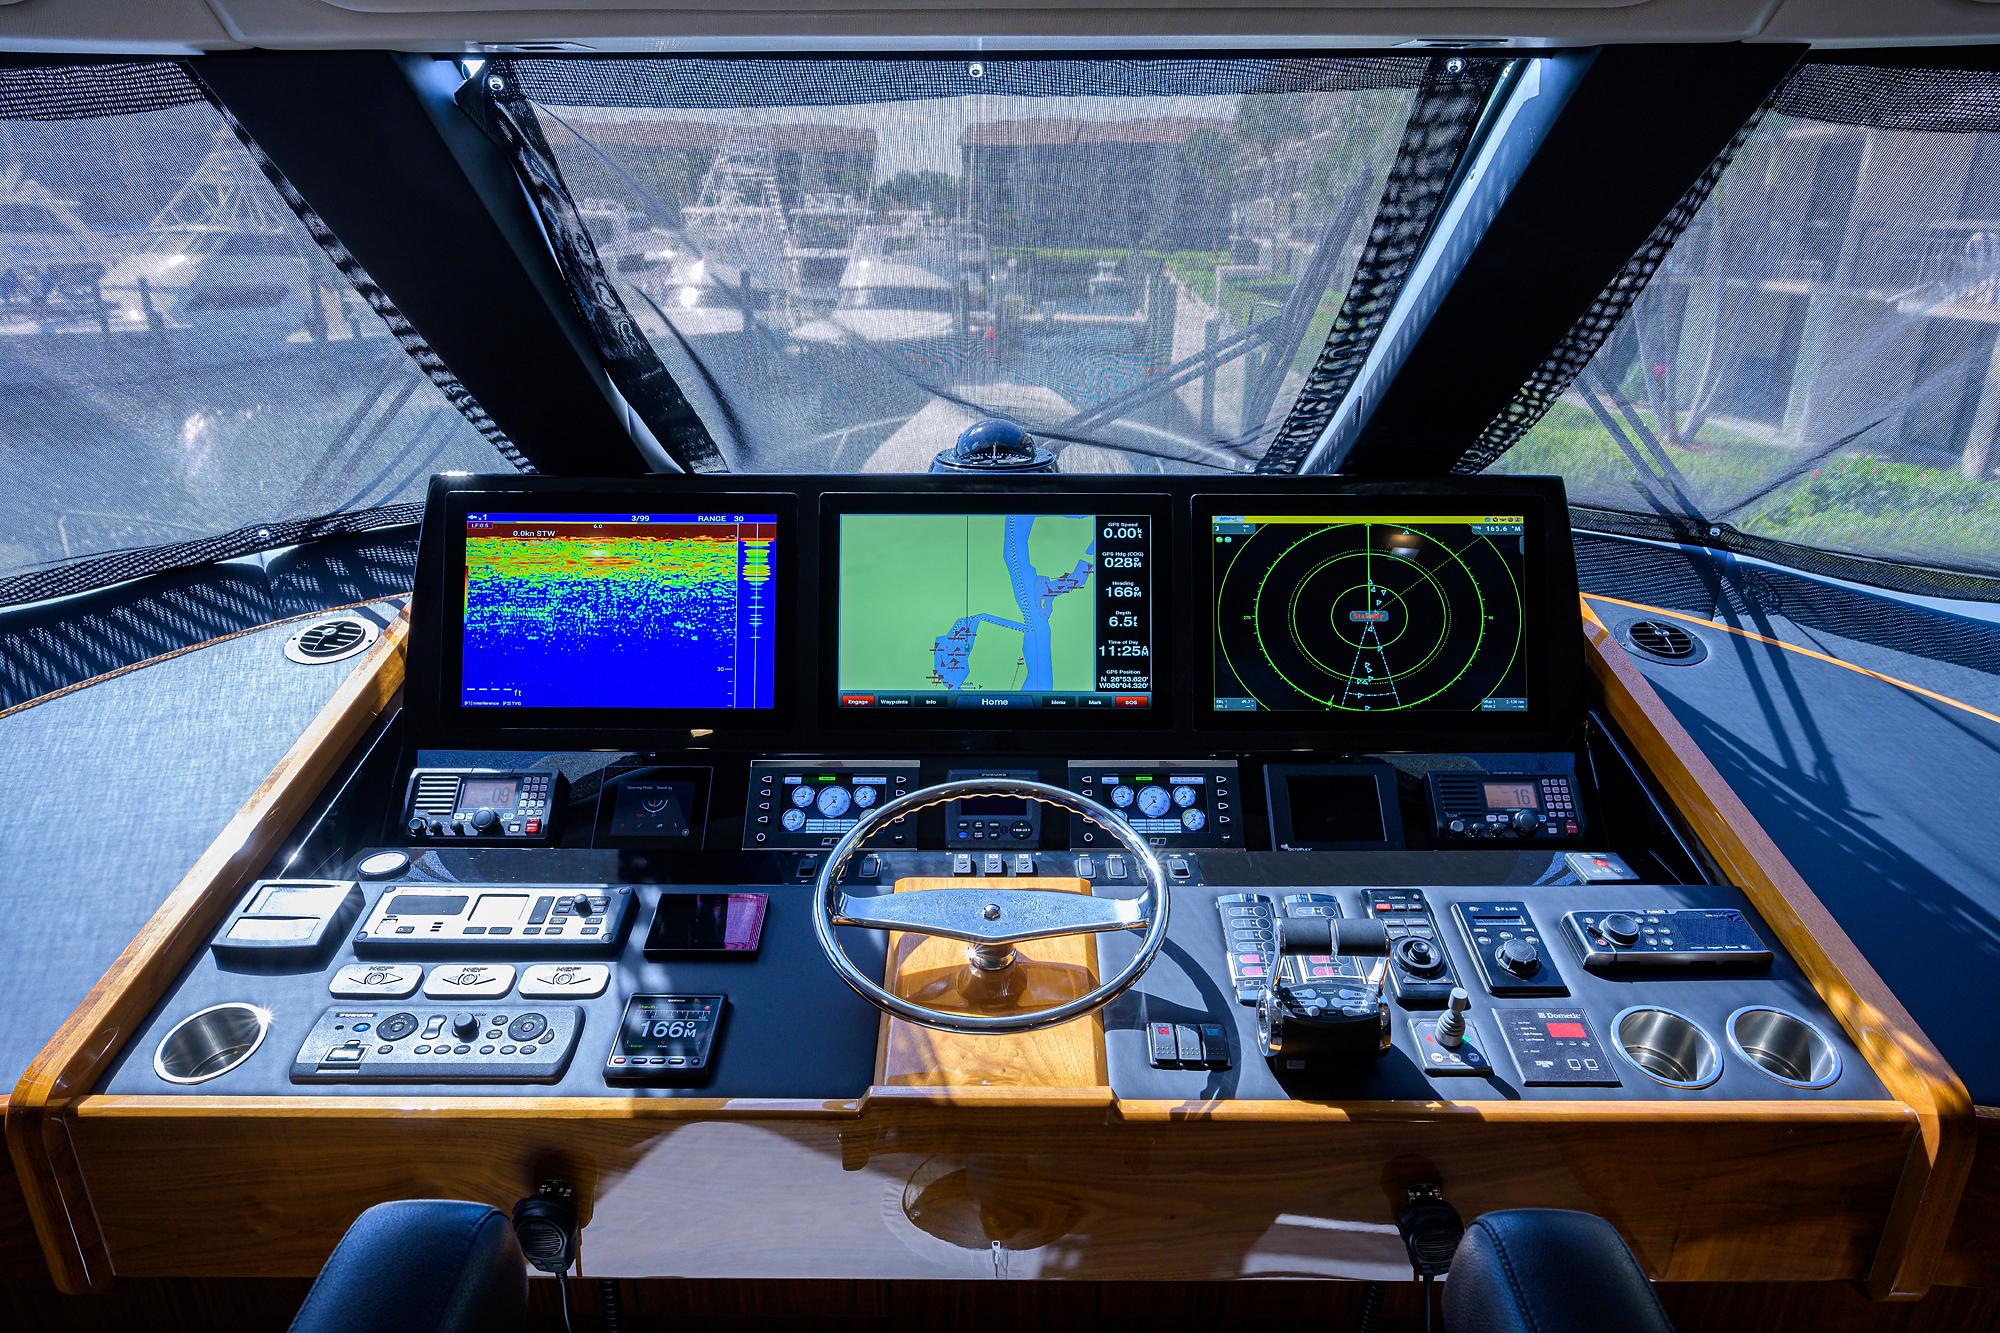 2017 Viking 80 MIRAGE - Enclosed Flybridge Helm Electronics